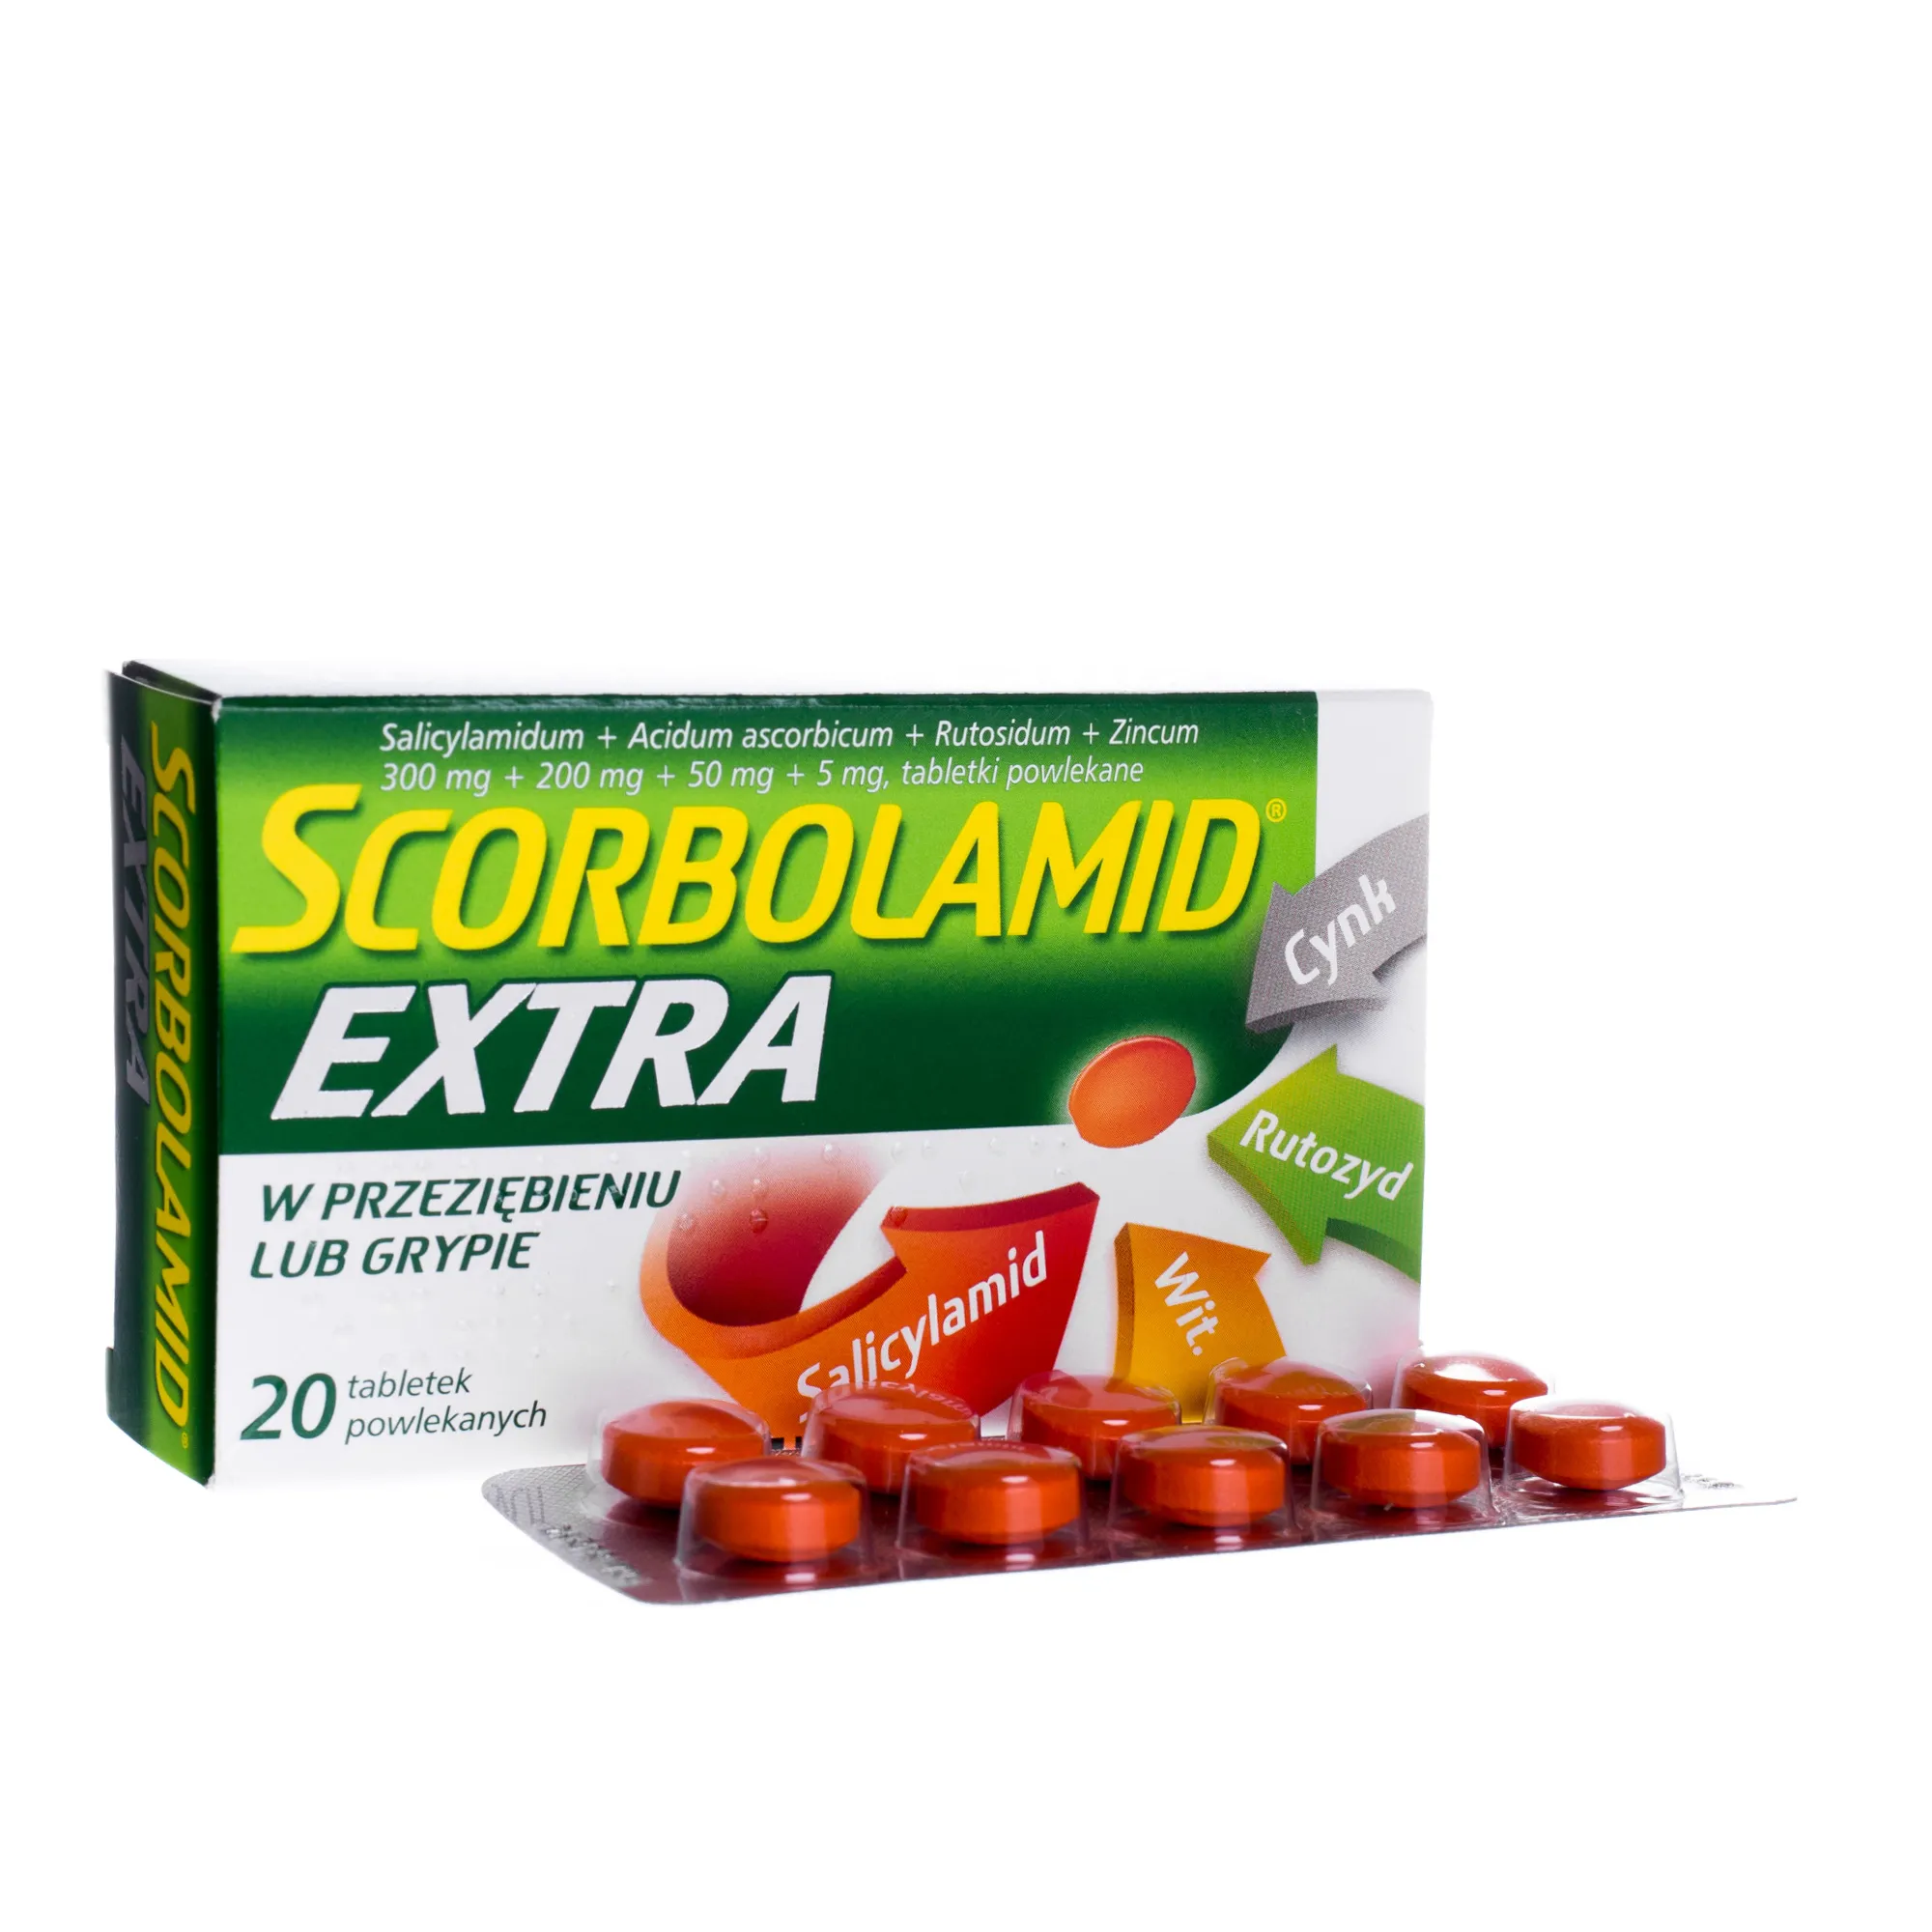 Scorbolamid Extra, 20 tabletek powlekanych 